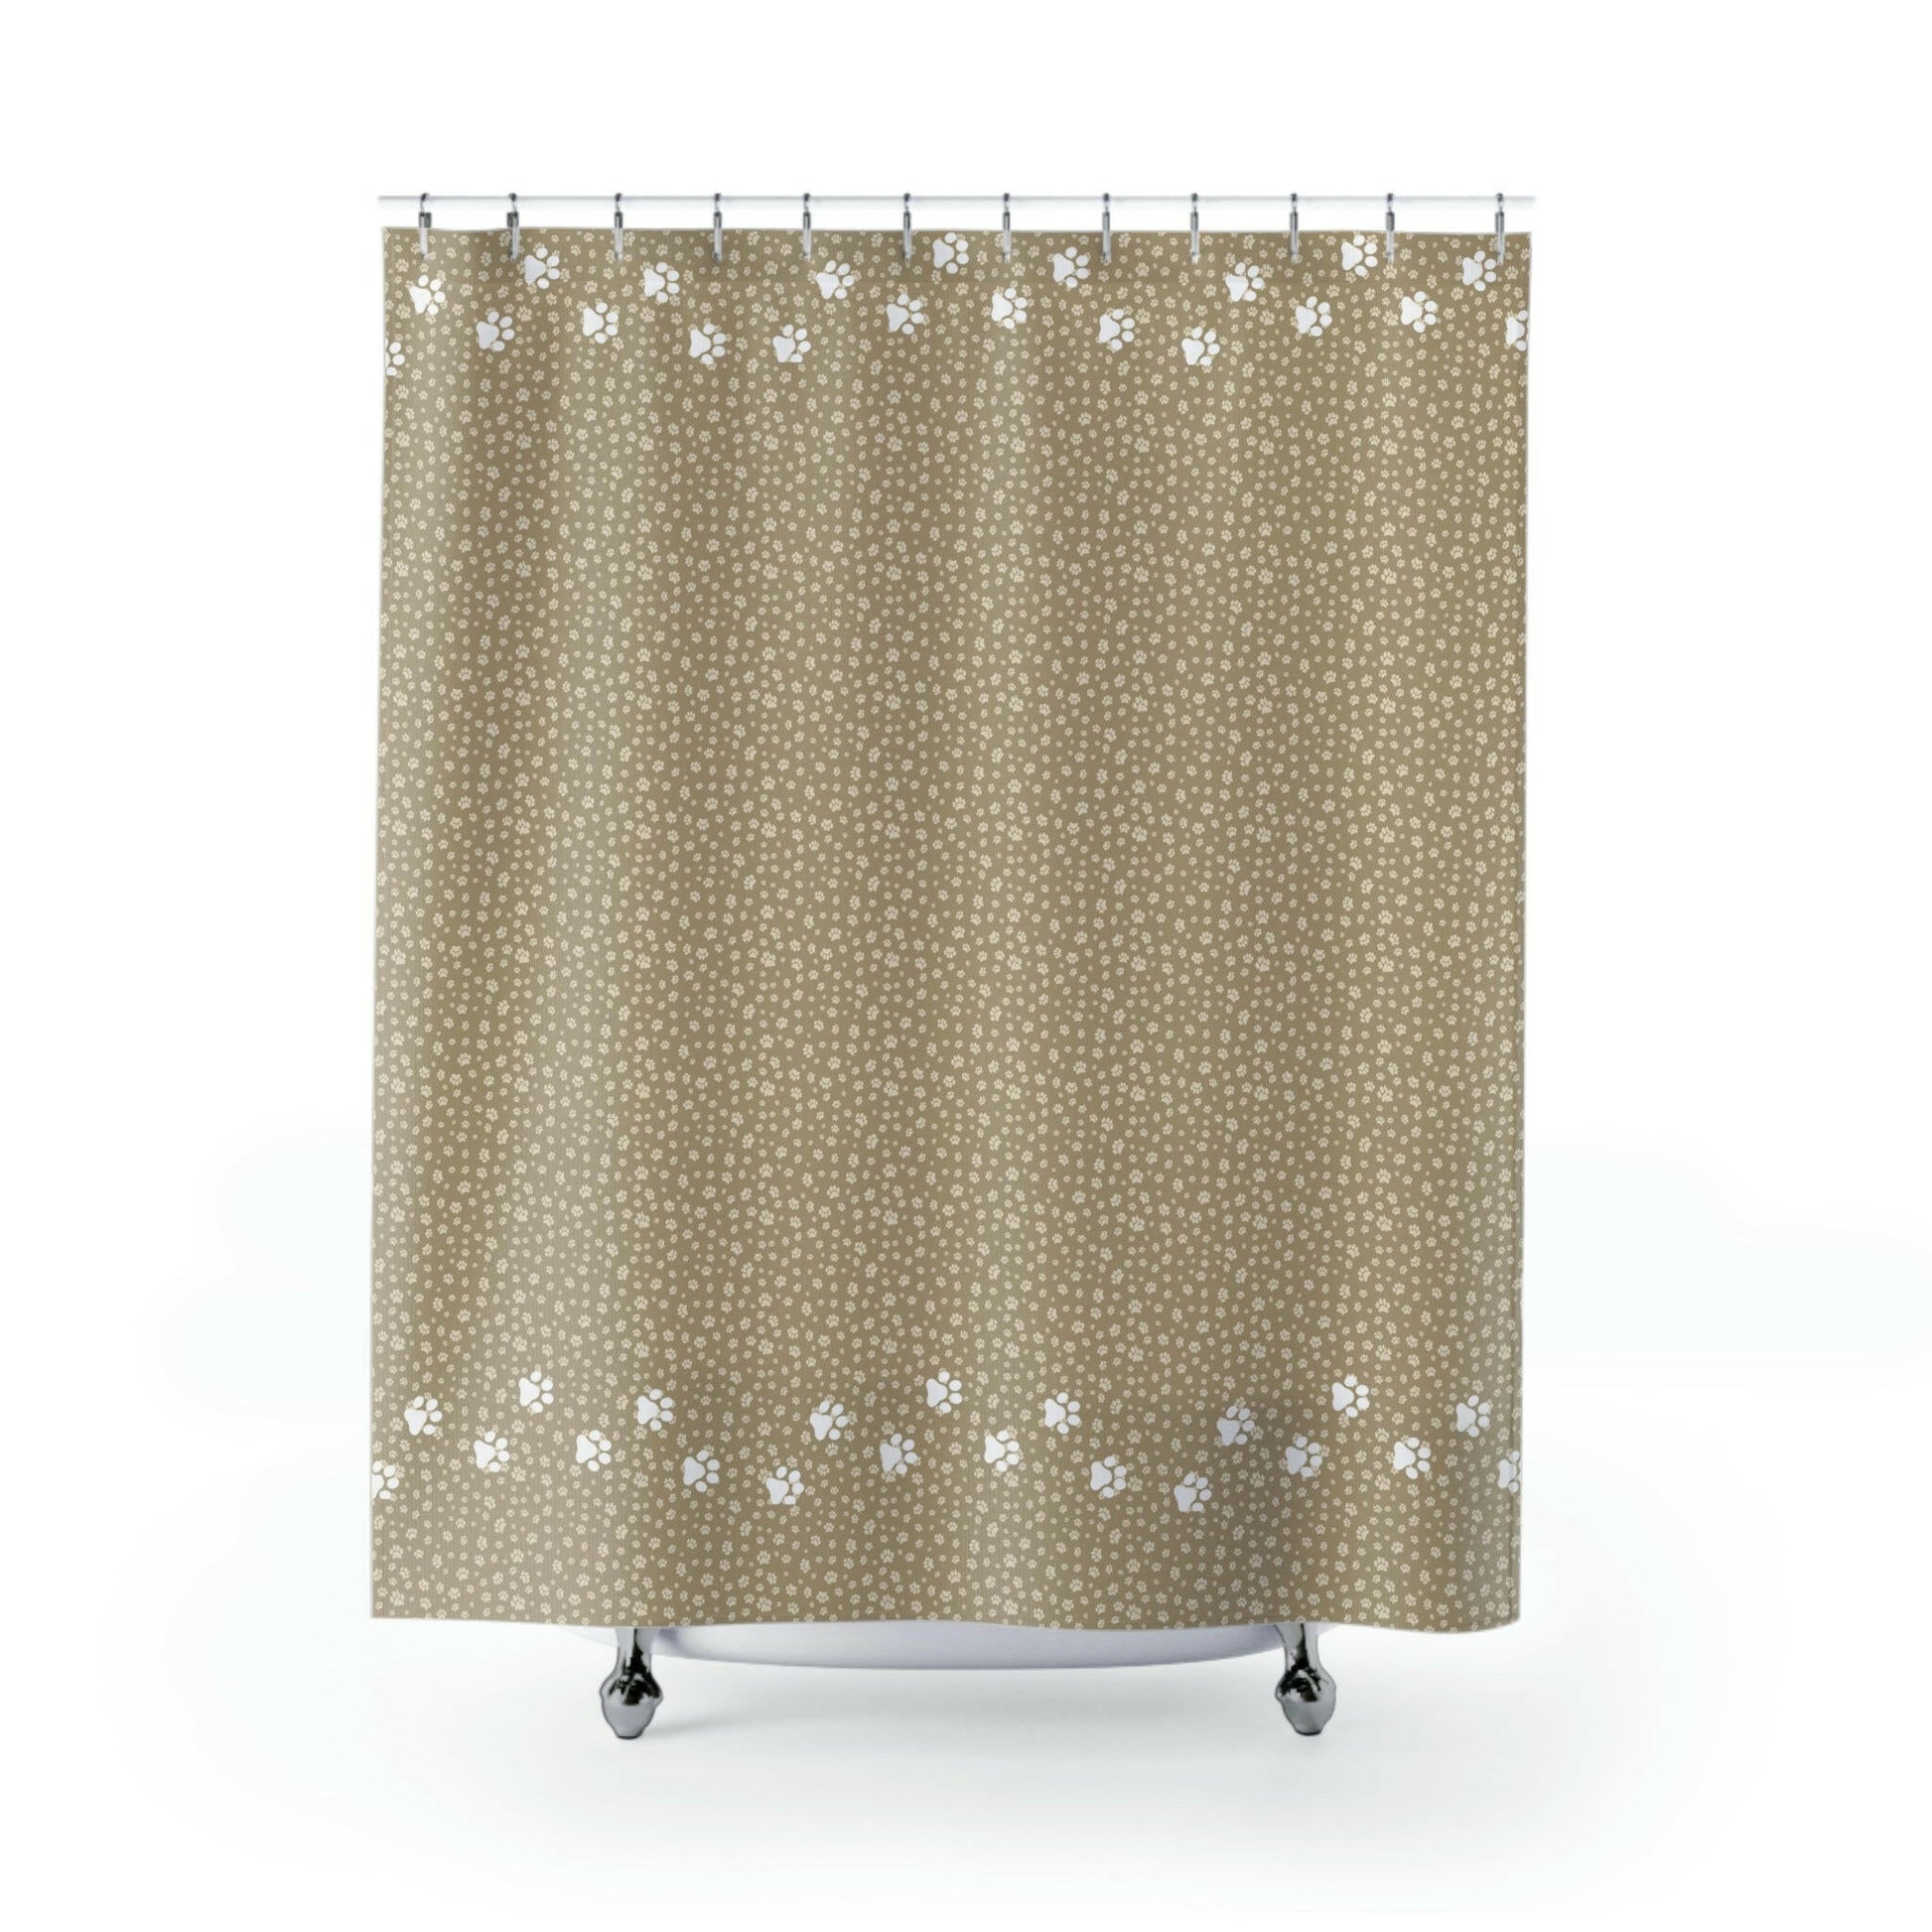 Pawriffic Shower Curtains - Home Decor - Epileptic Al’s Shop